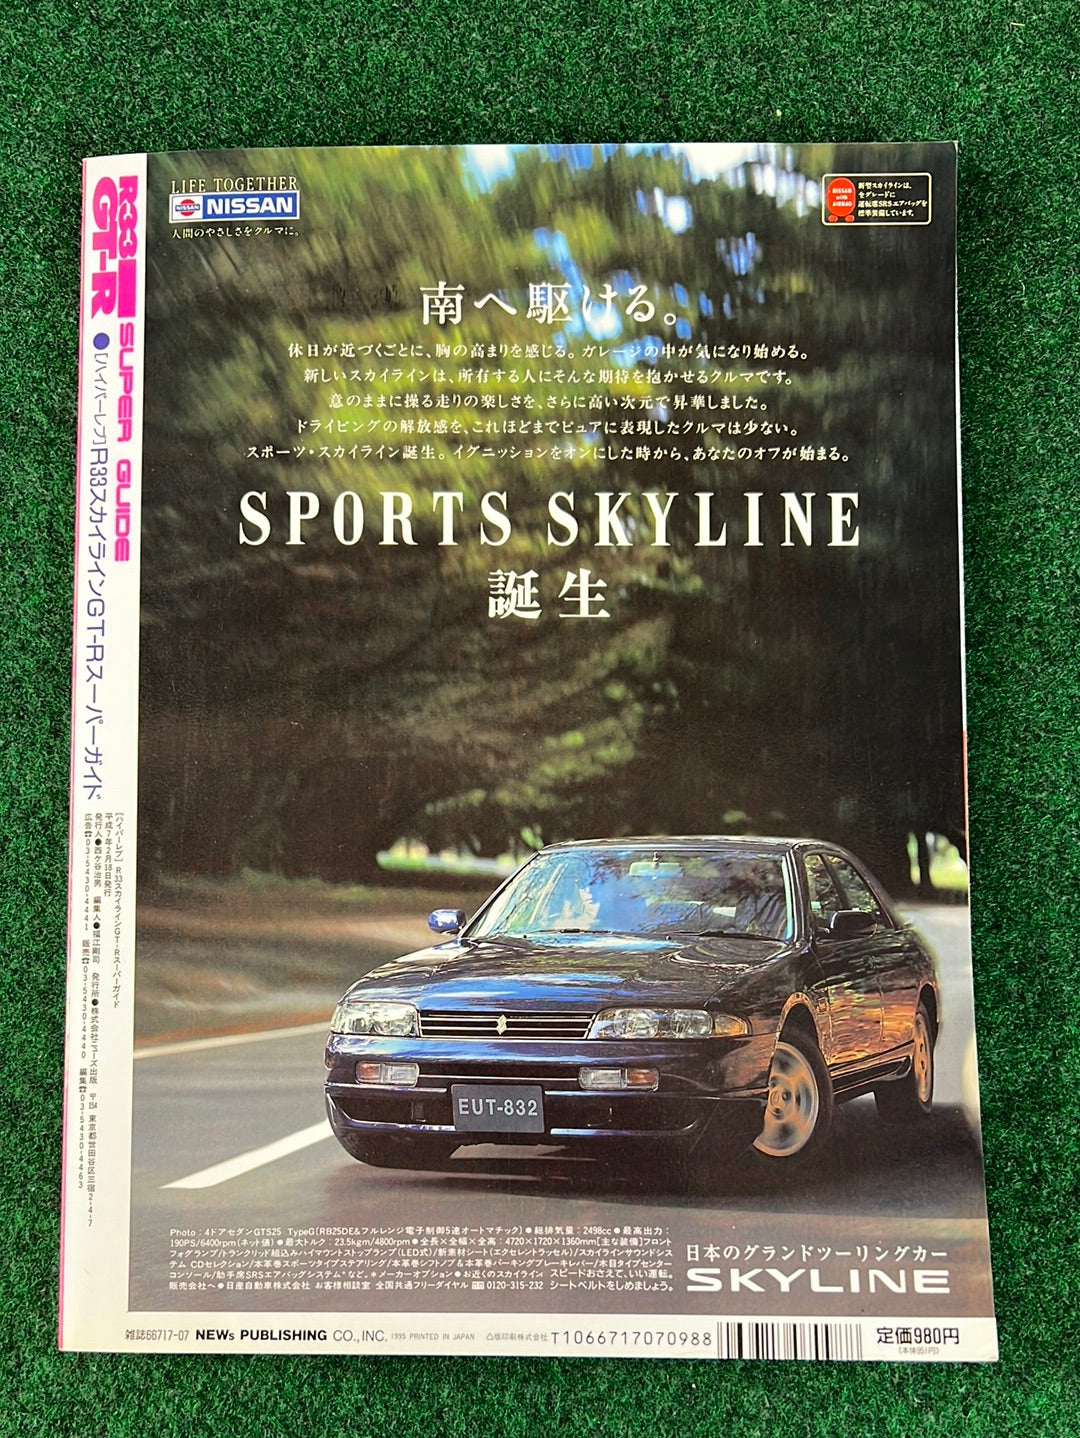 Hyper Rev Super Guide - Nissan Skyline R33 GTR Super Guide Magazine